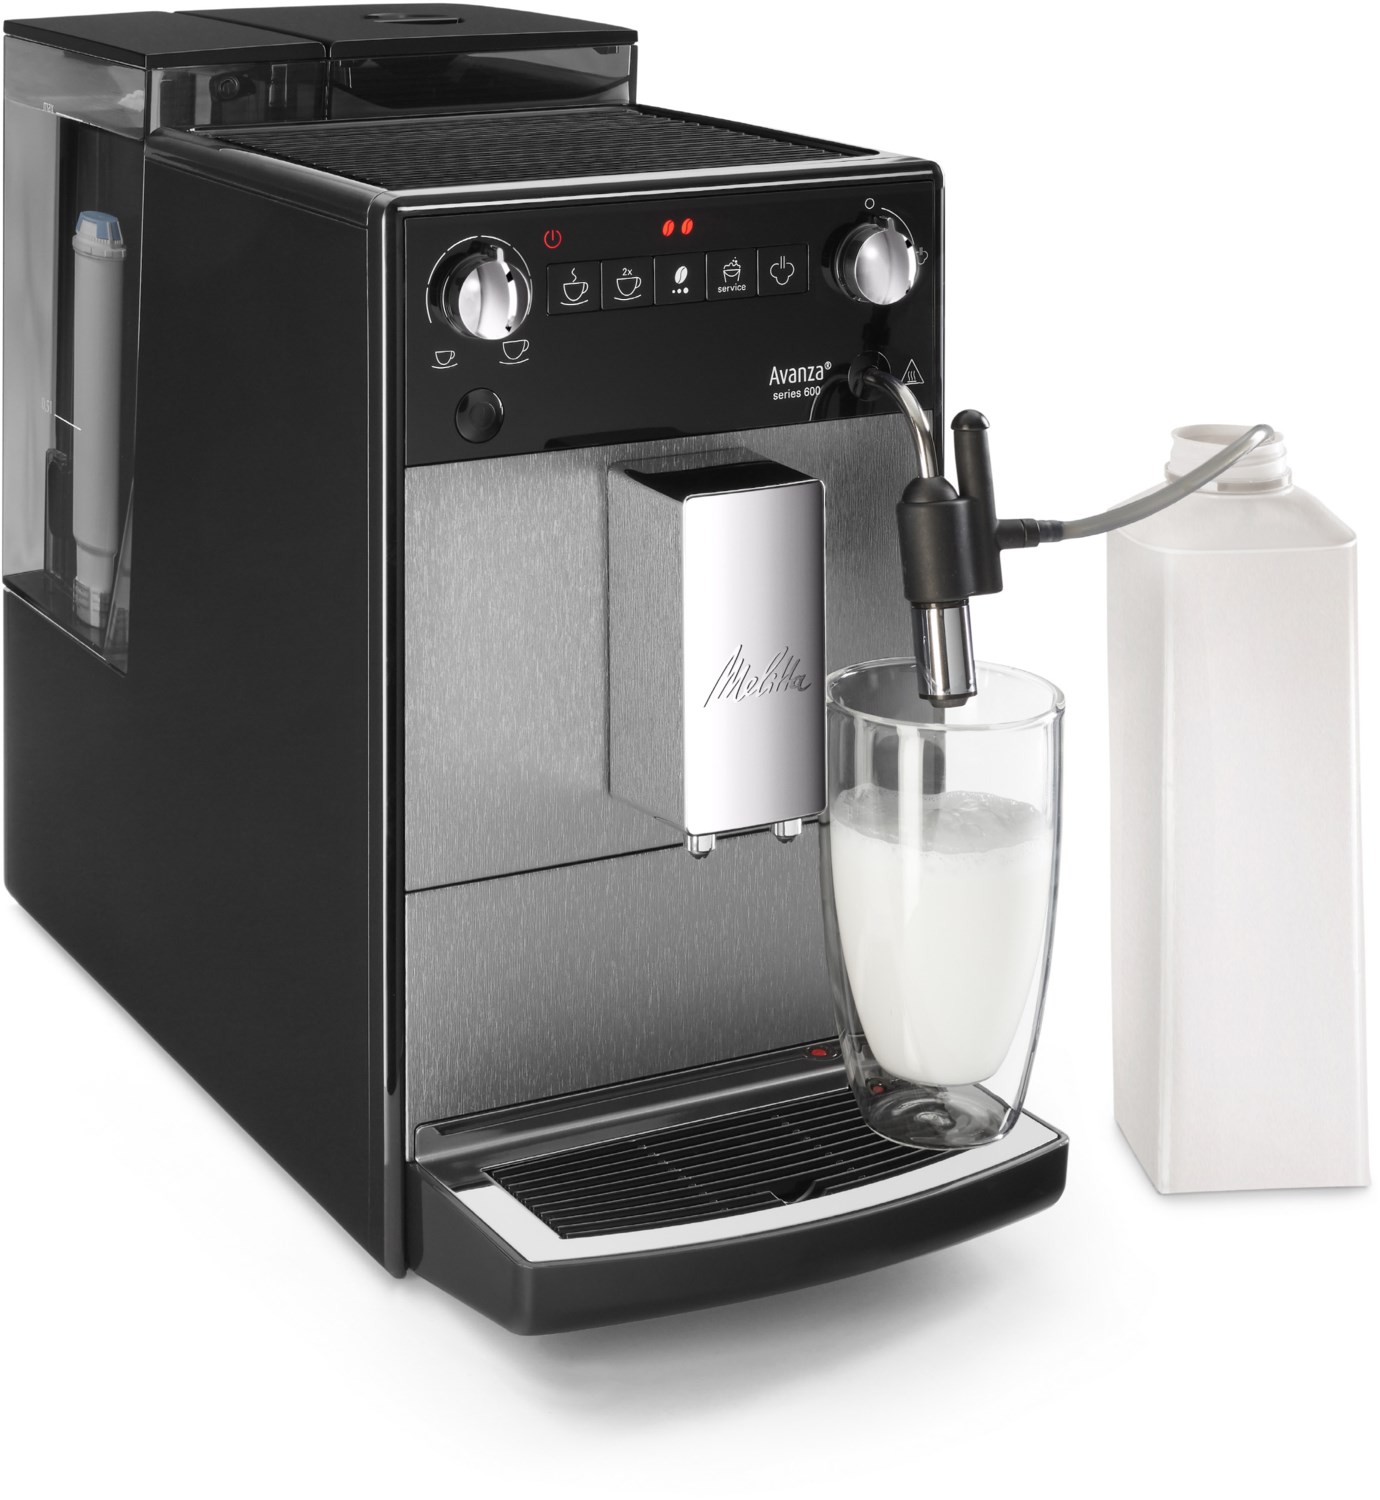 Melitta Avanza F270-100 Kaffeevollautomat mystic titan